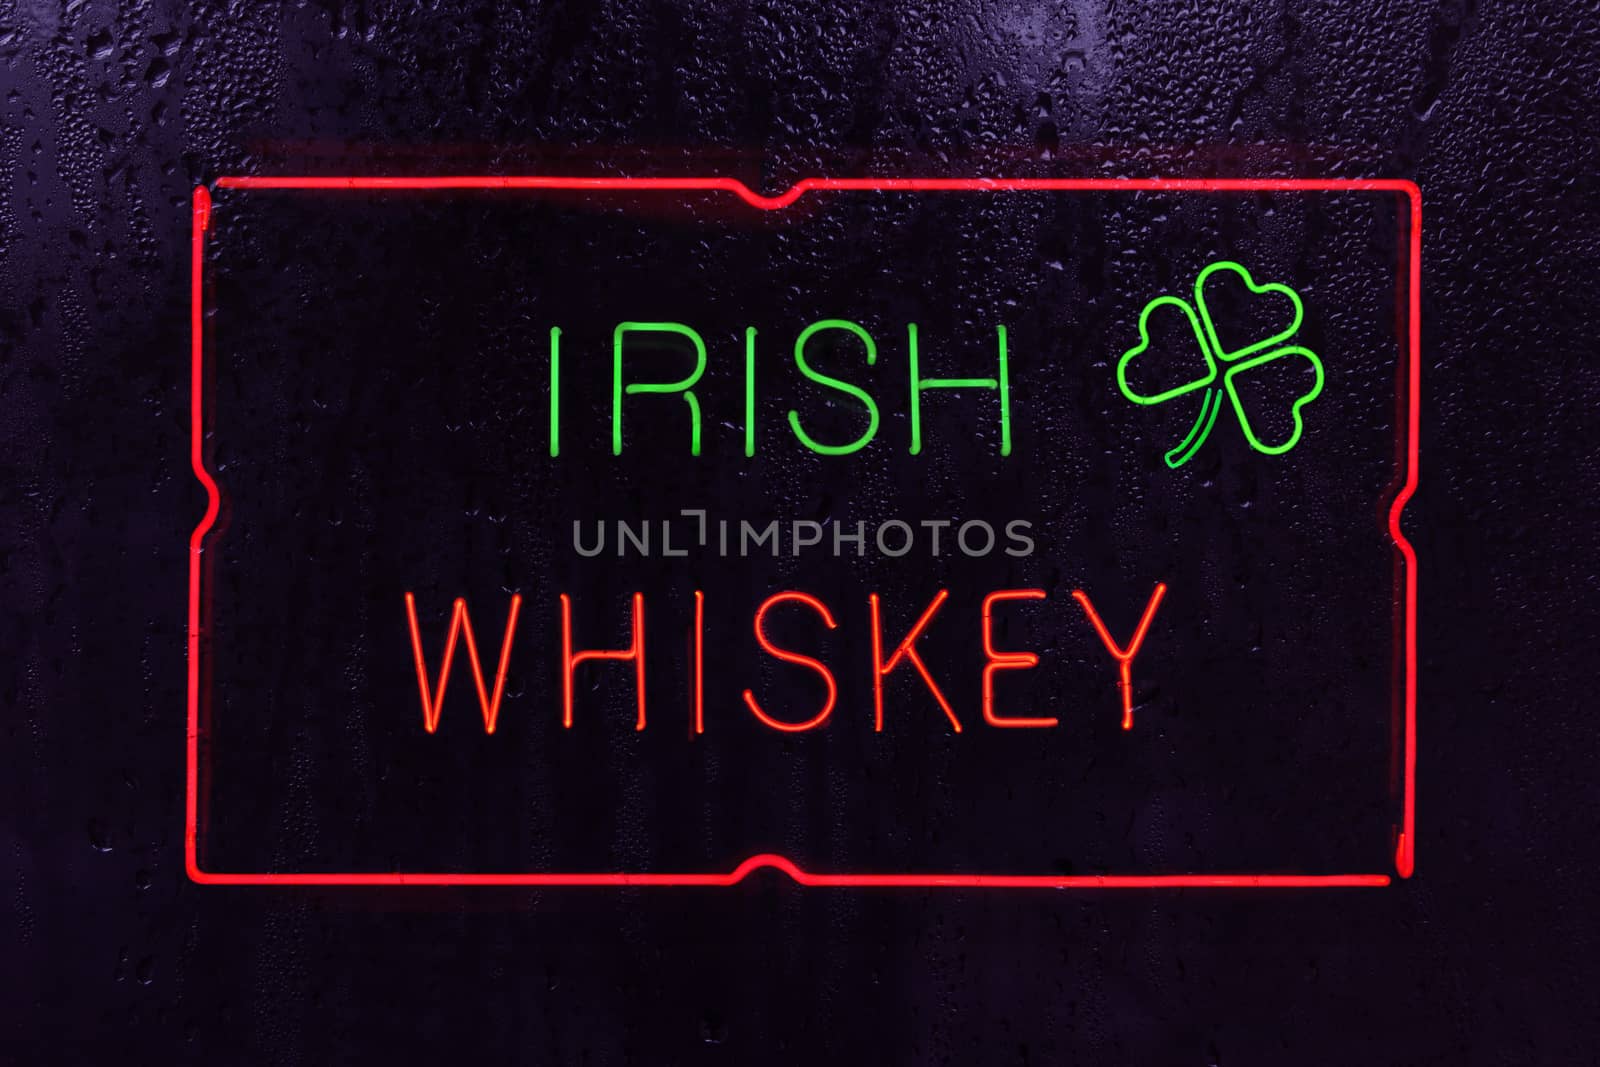 Vintage Neon Irish Whiskey Sign in Rainy Window